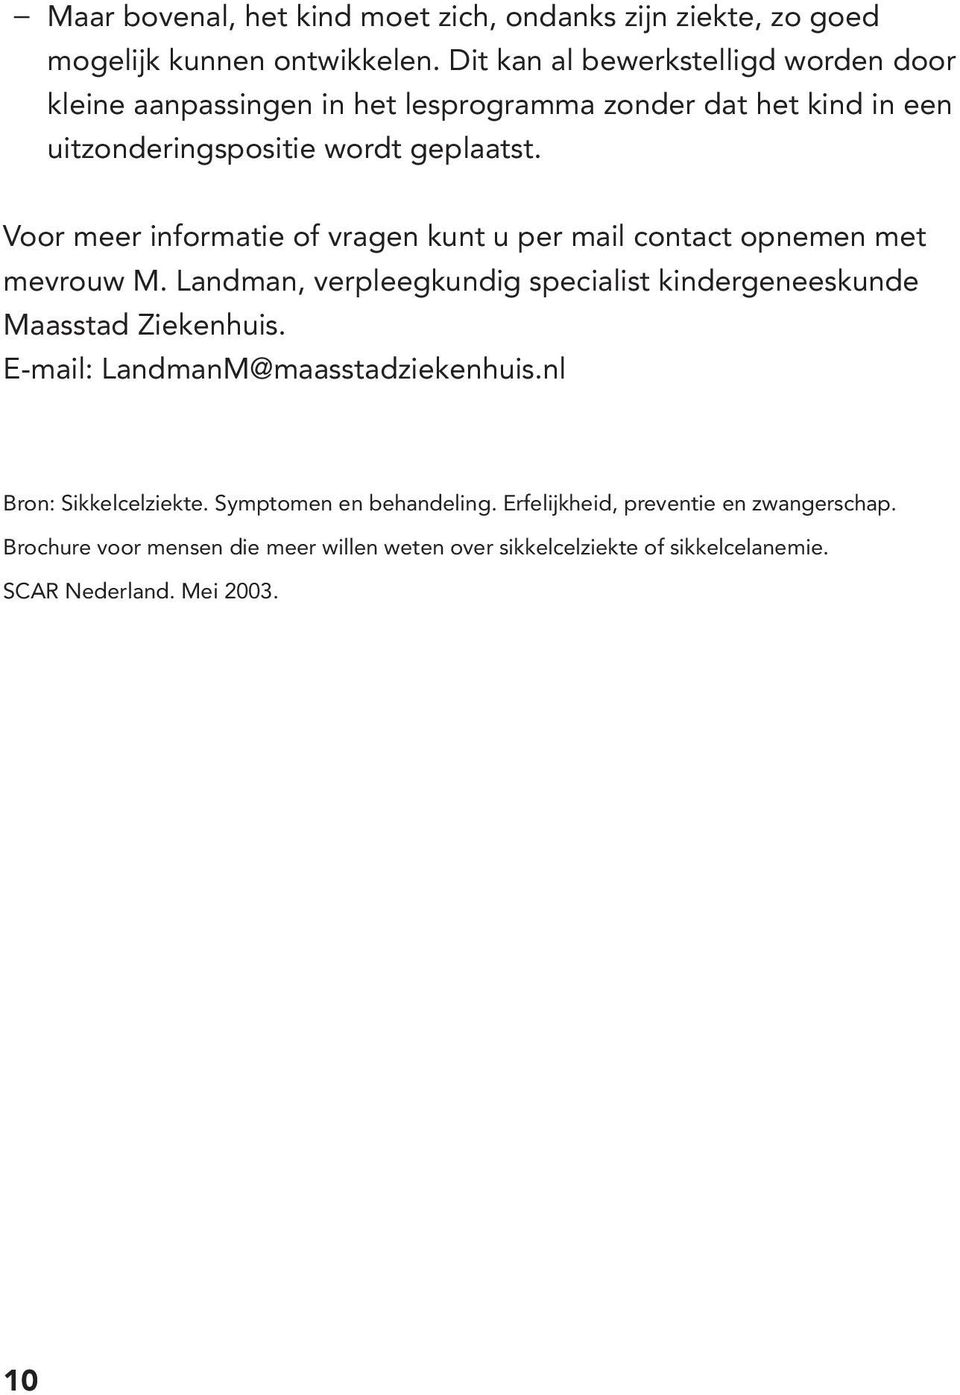 Voor meer informatie of vragen kunt u per mail contact opnemen met mevrouw M. Landman, verpleegkundig specialist kindergeneeskunde Maasstad Ziekenhuis.